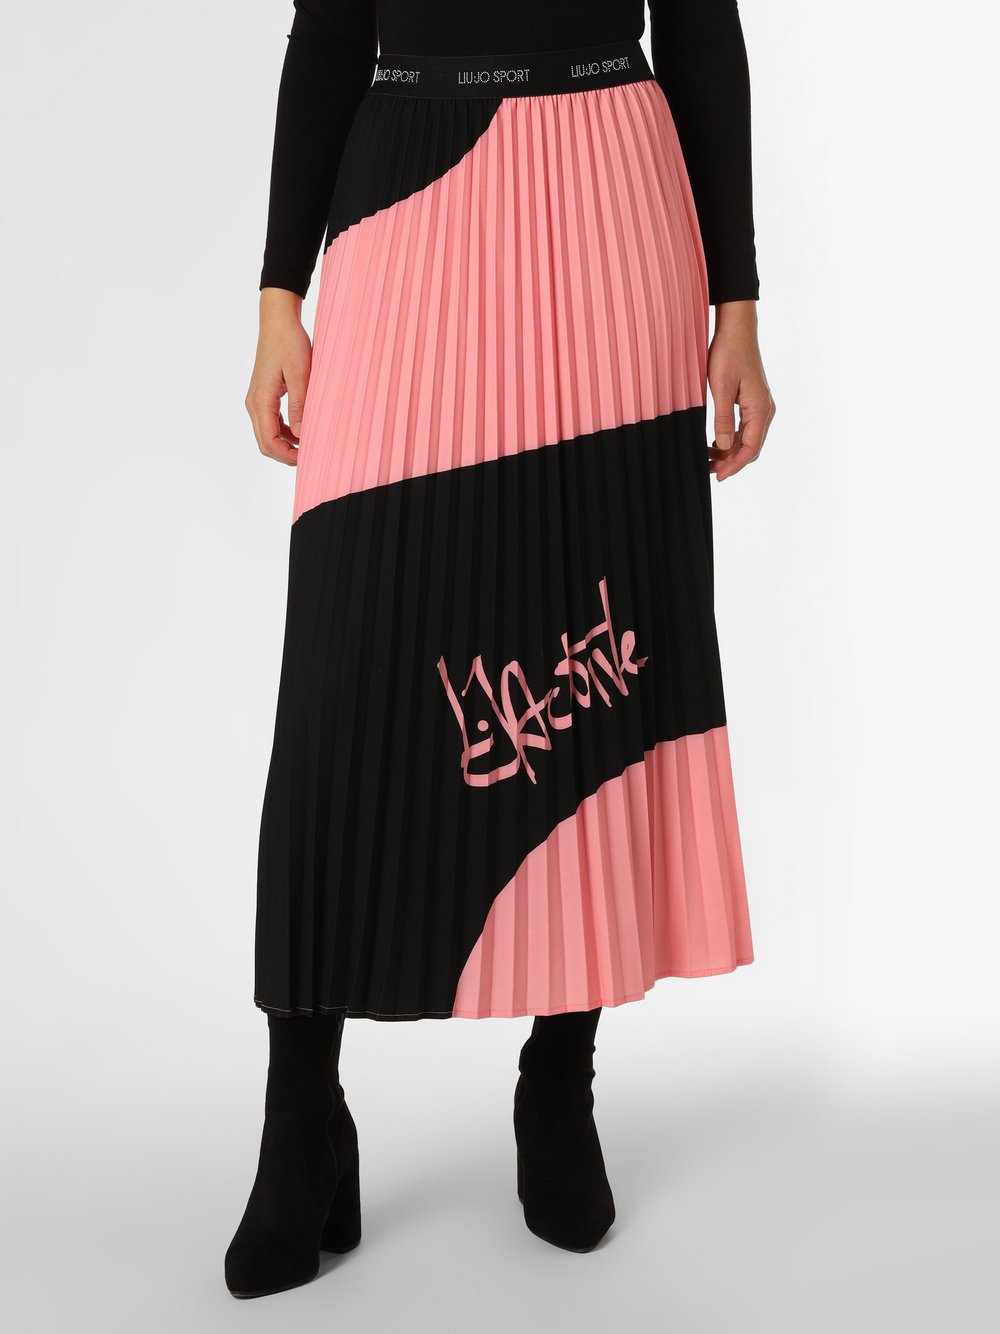 Liu Jo Collection - Spódnica damska, różowy|czarny|wielokolorowy